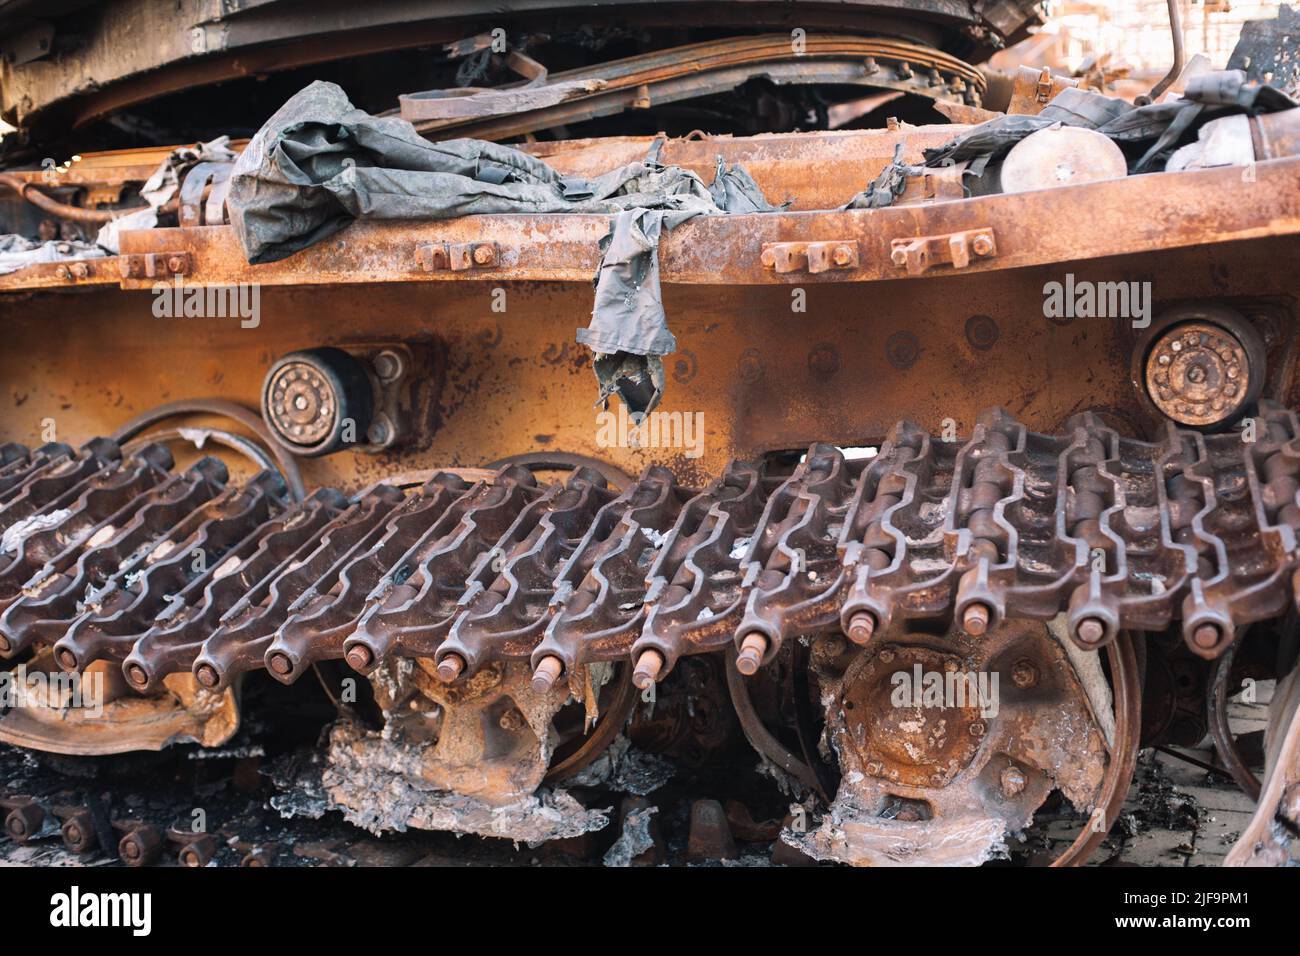 Détruit et brûlé un véhicule militaire blindé russe avec des restes de soldats russes Banque D'Images